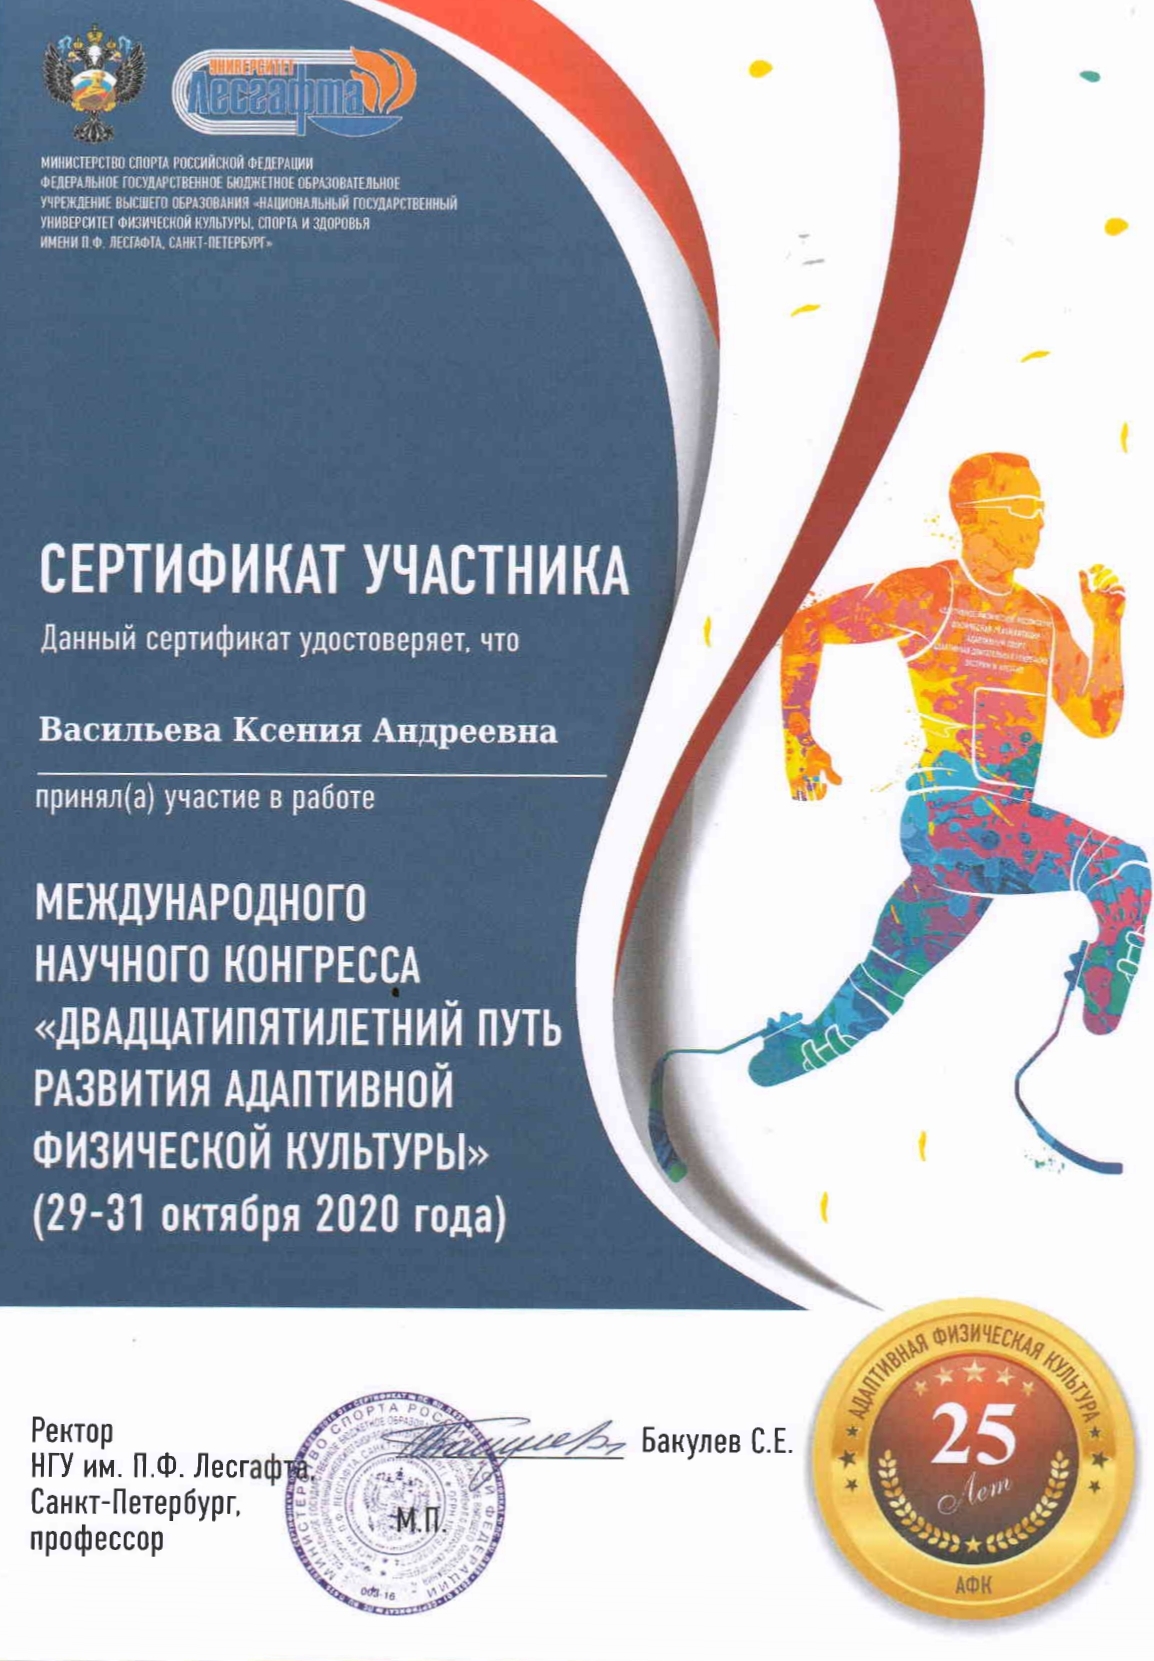 Сертификат международного научного конгресса - Васильева Ксения Андреевна